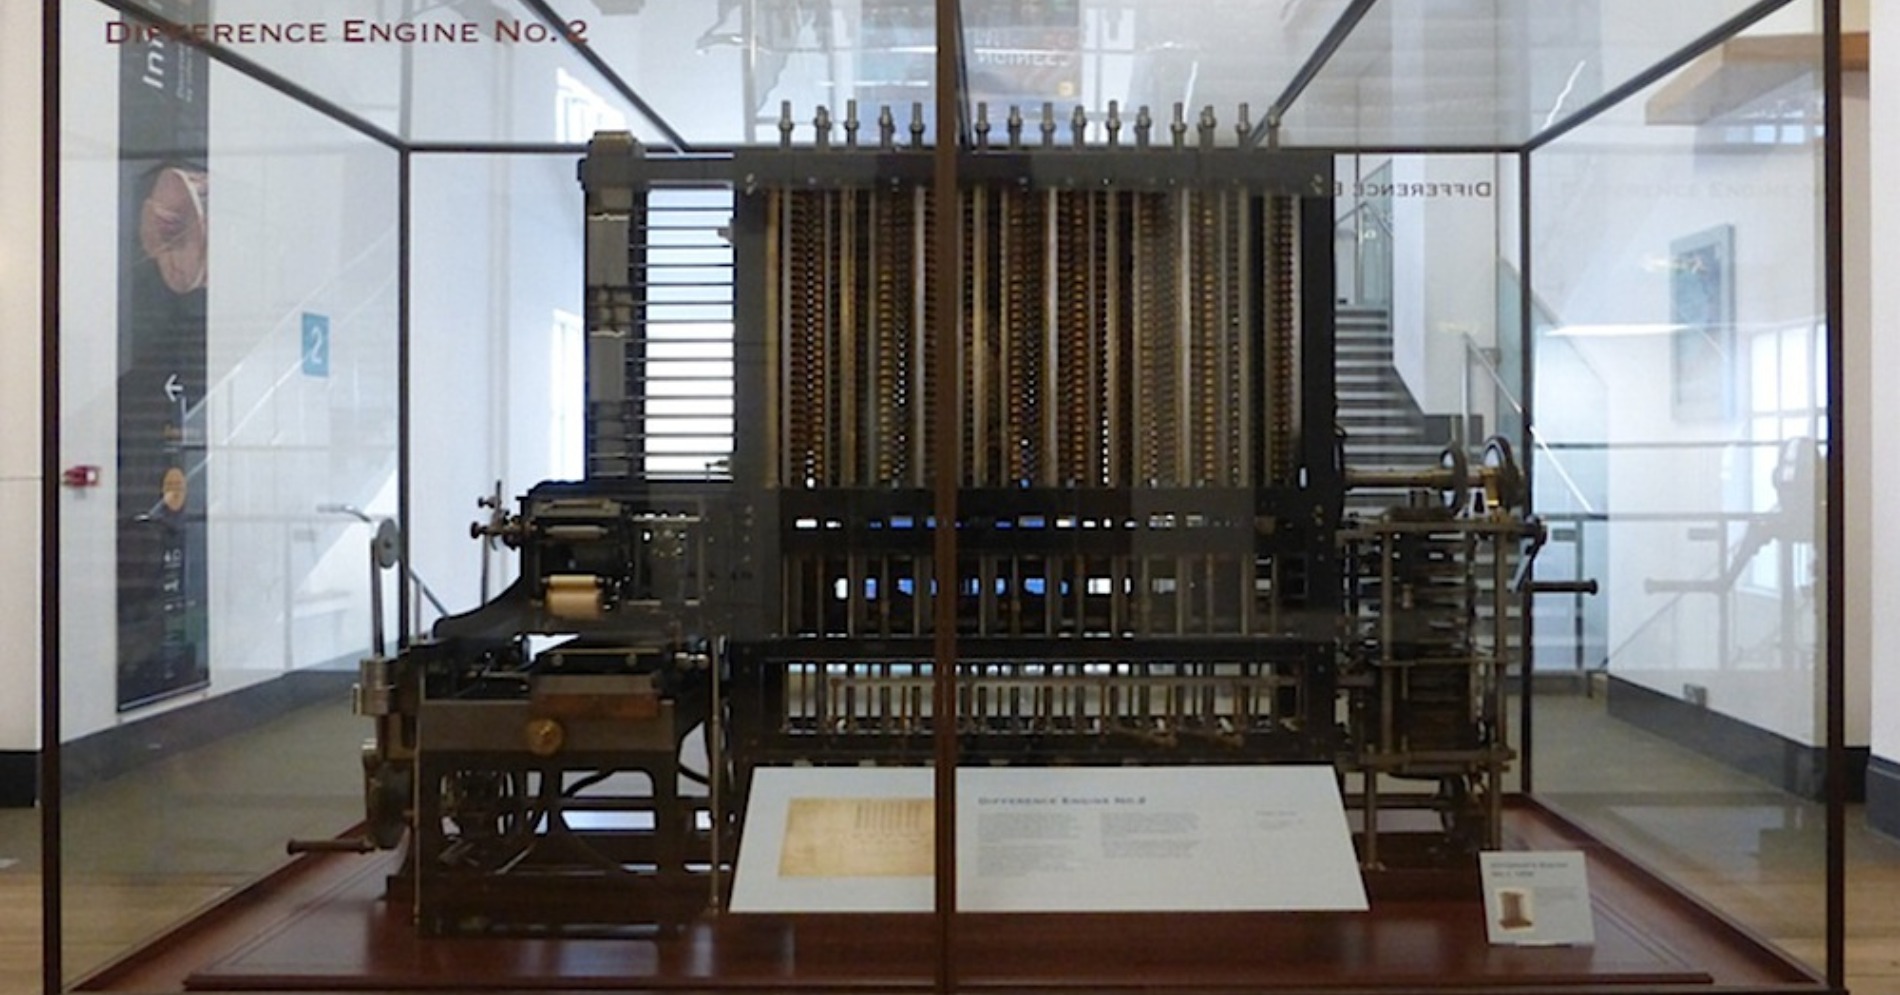 Difference Machine No. 2 di Museum Sains yang dirakit sesuai desain Babbage pada 1991. (Sumber gambar: victorianweb.org)